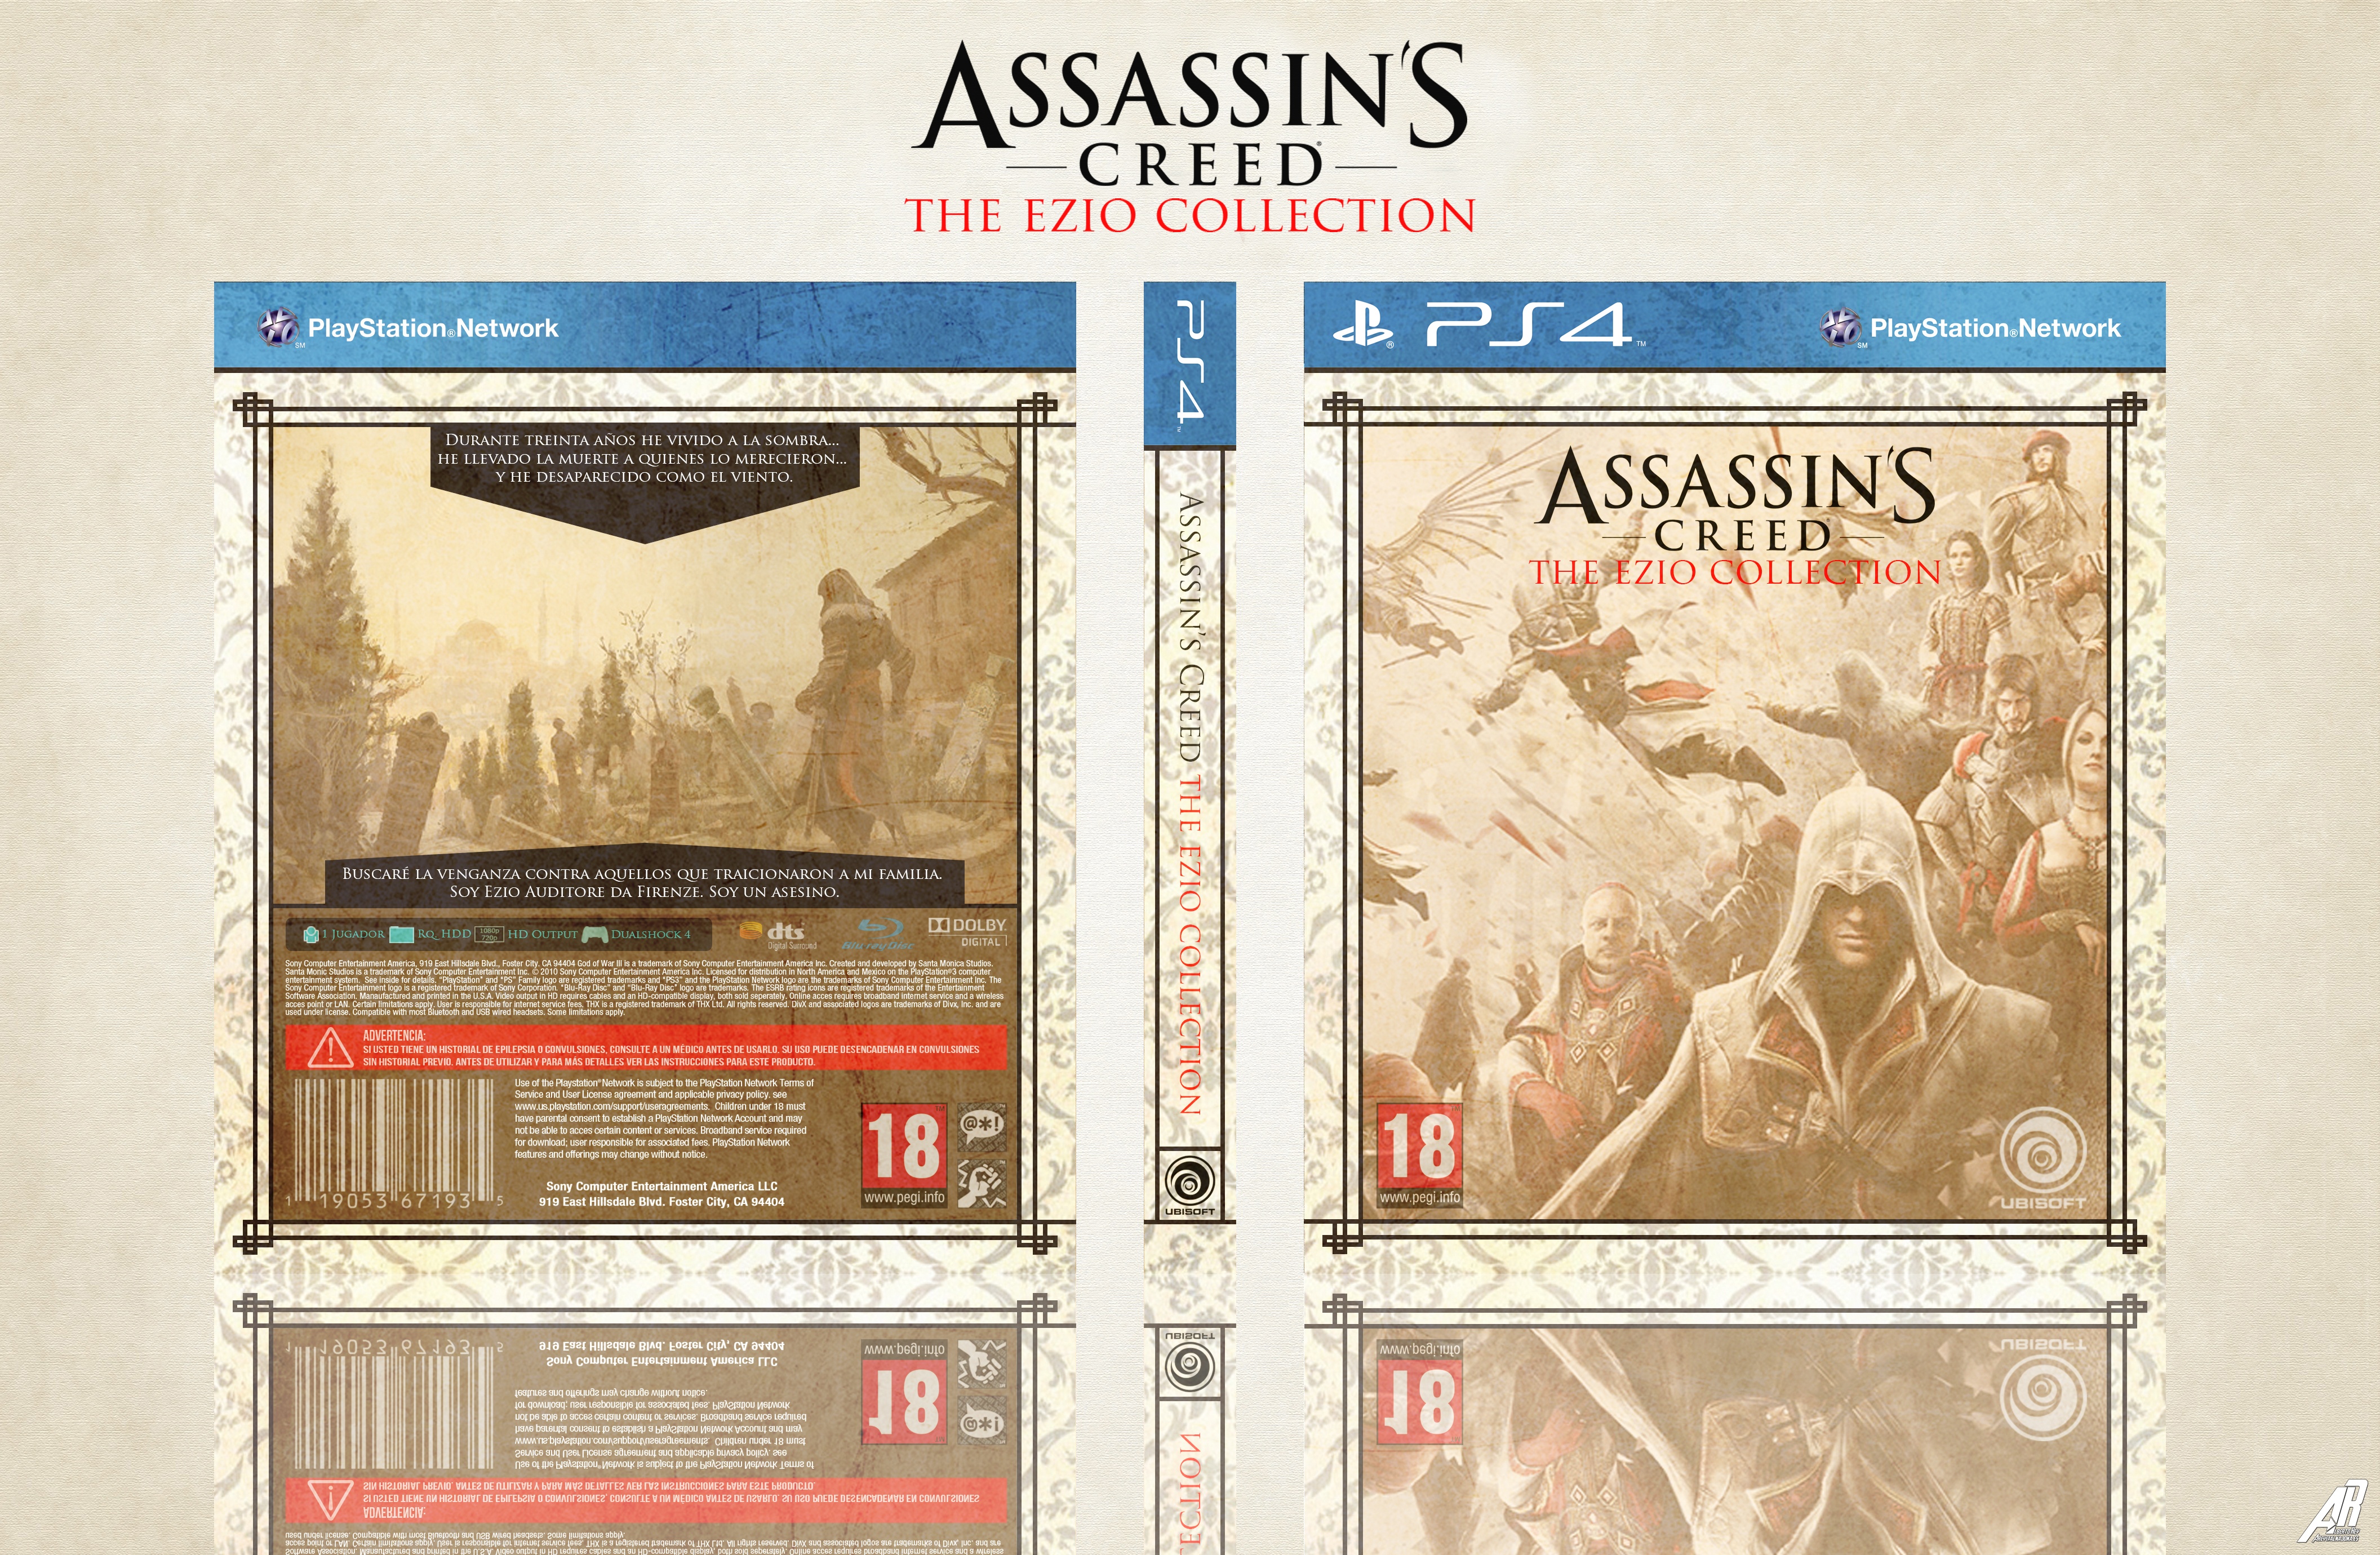 Assassin's Creed: The Ezio Collection box cover